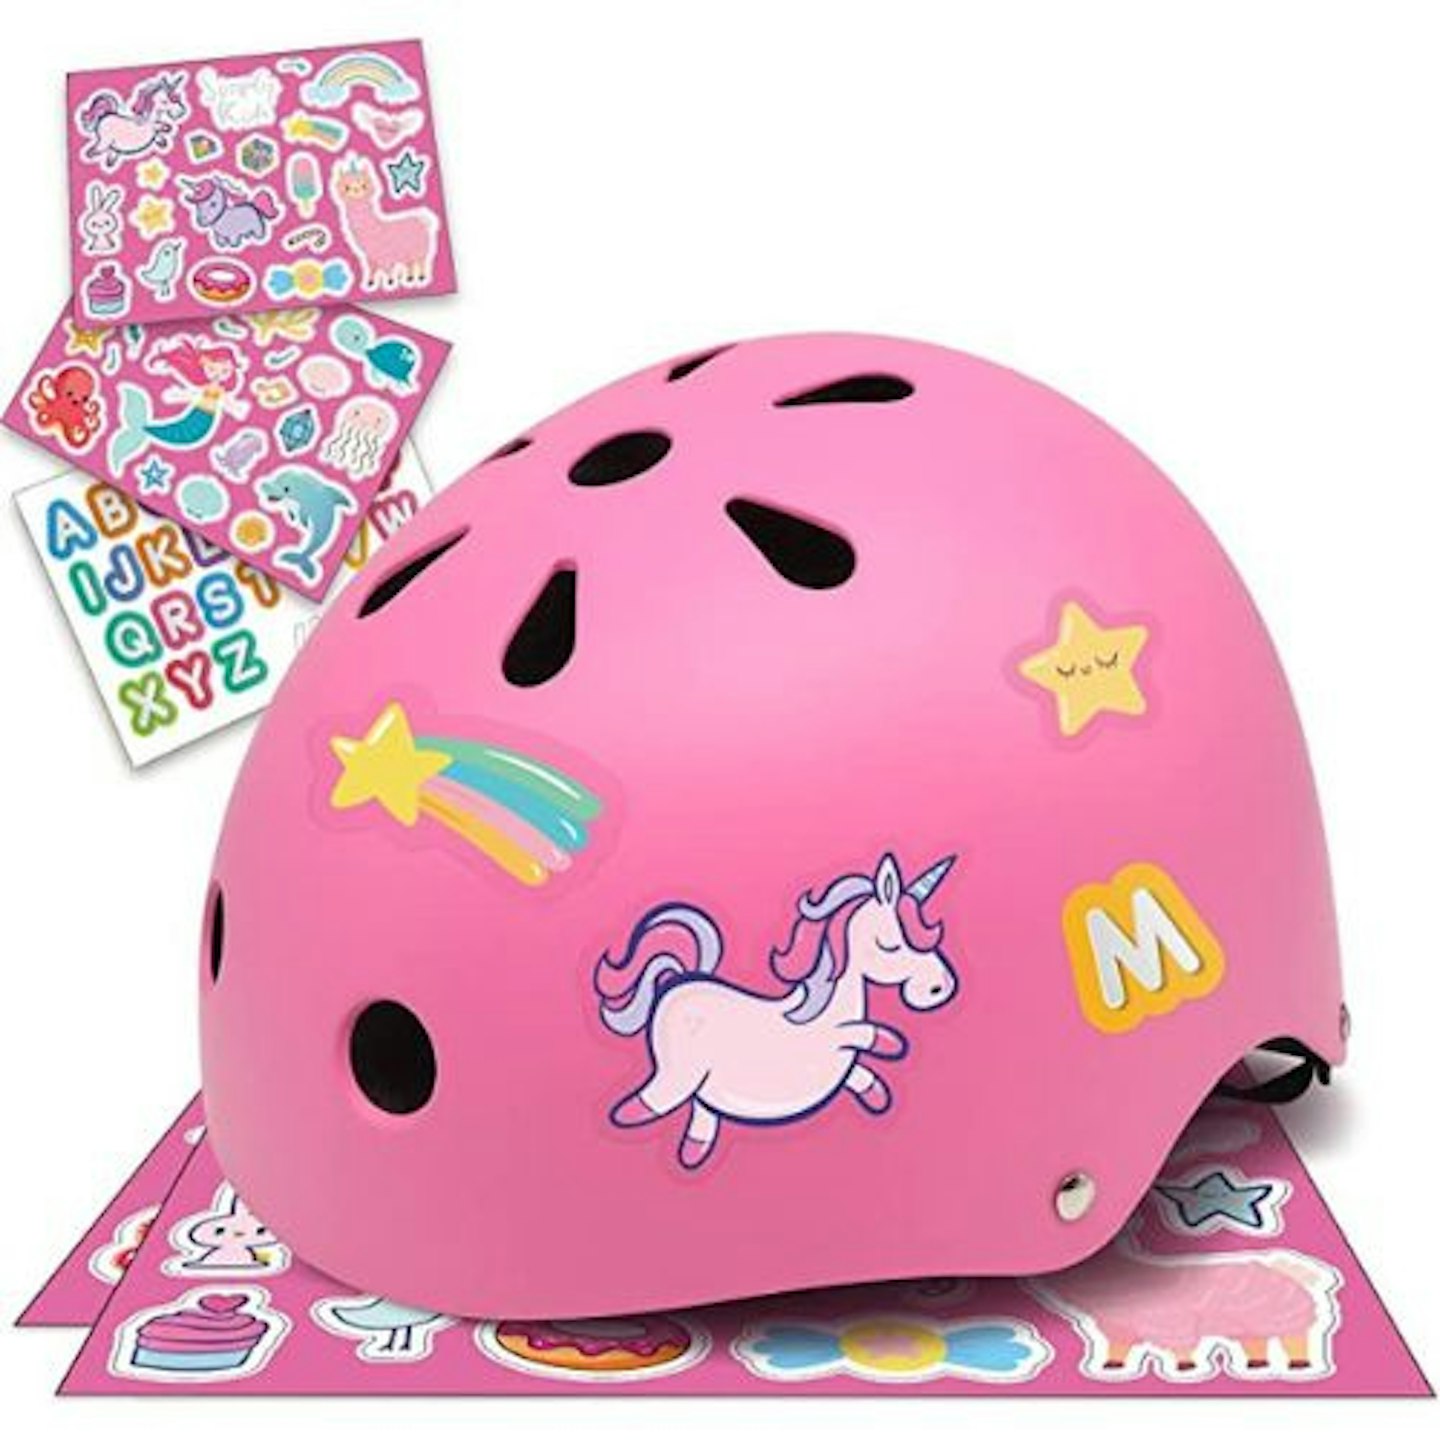 Simply Kids Helmet